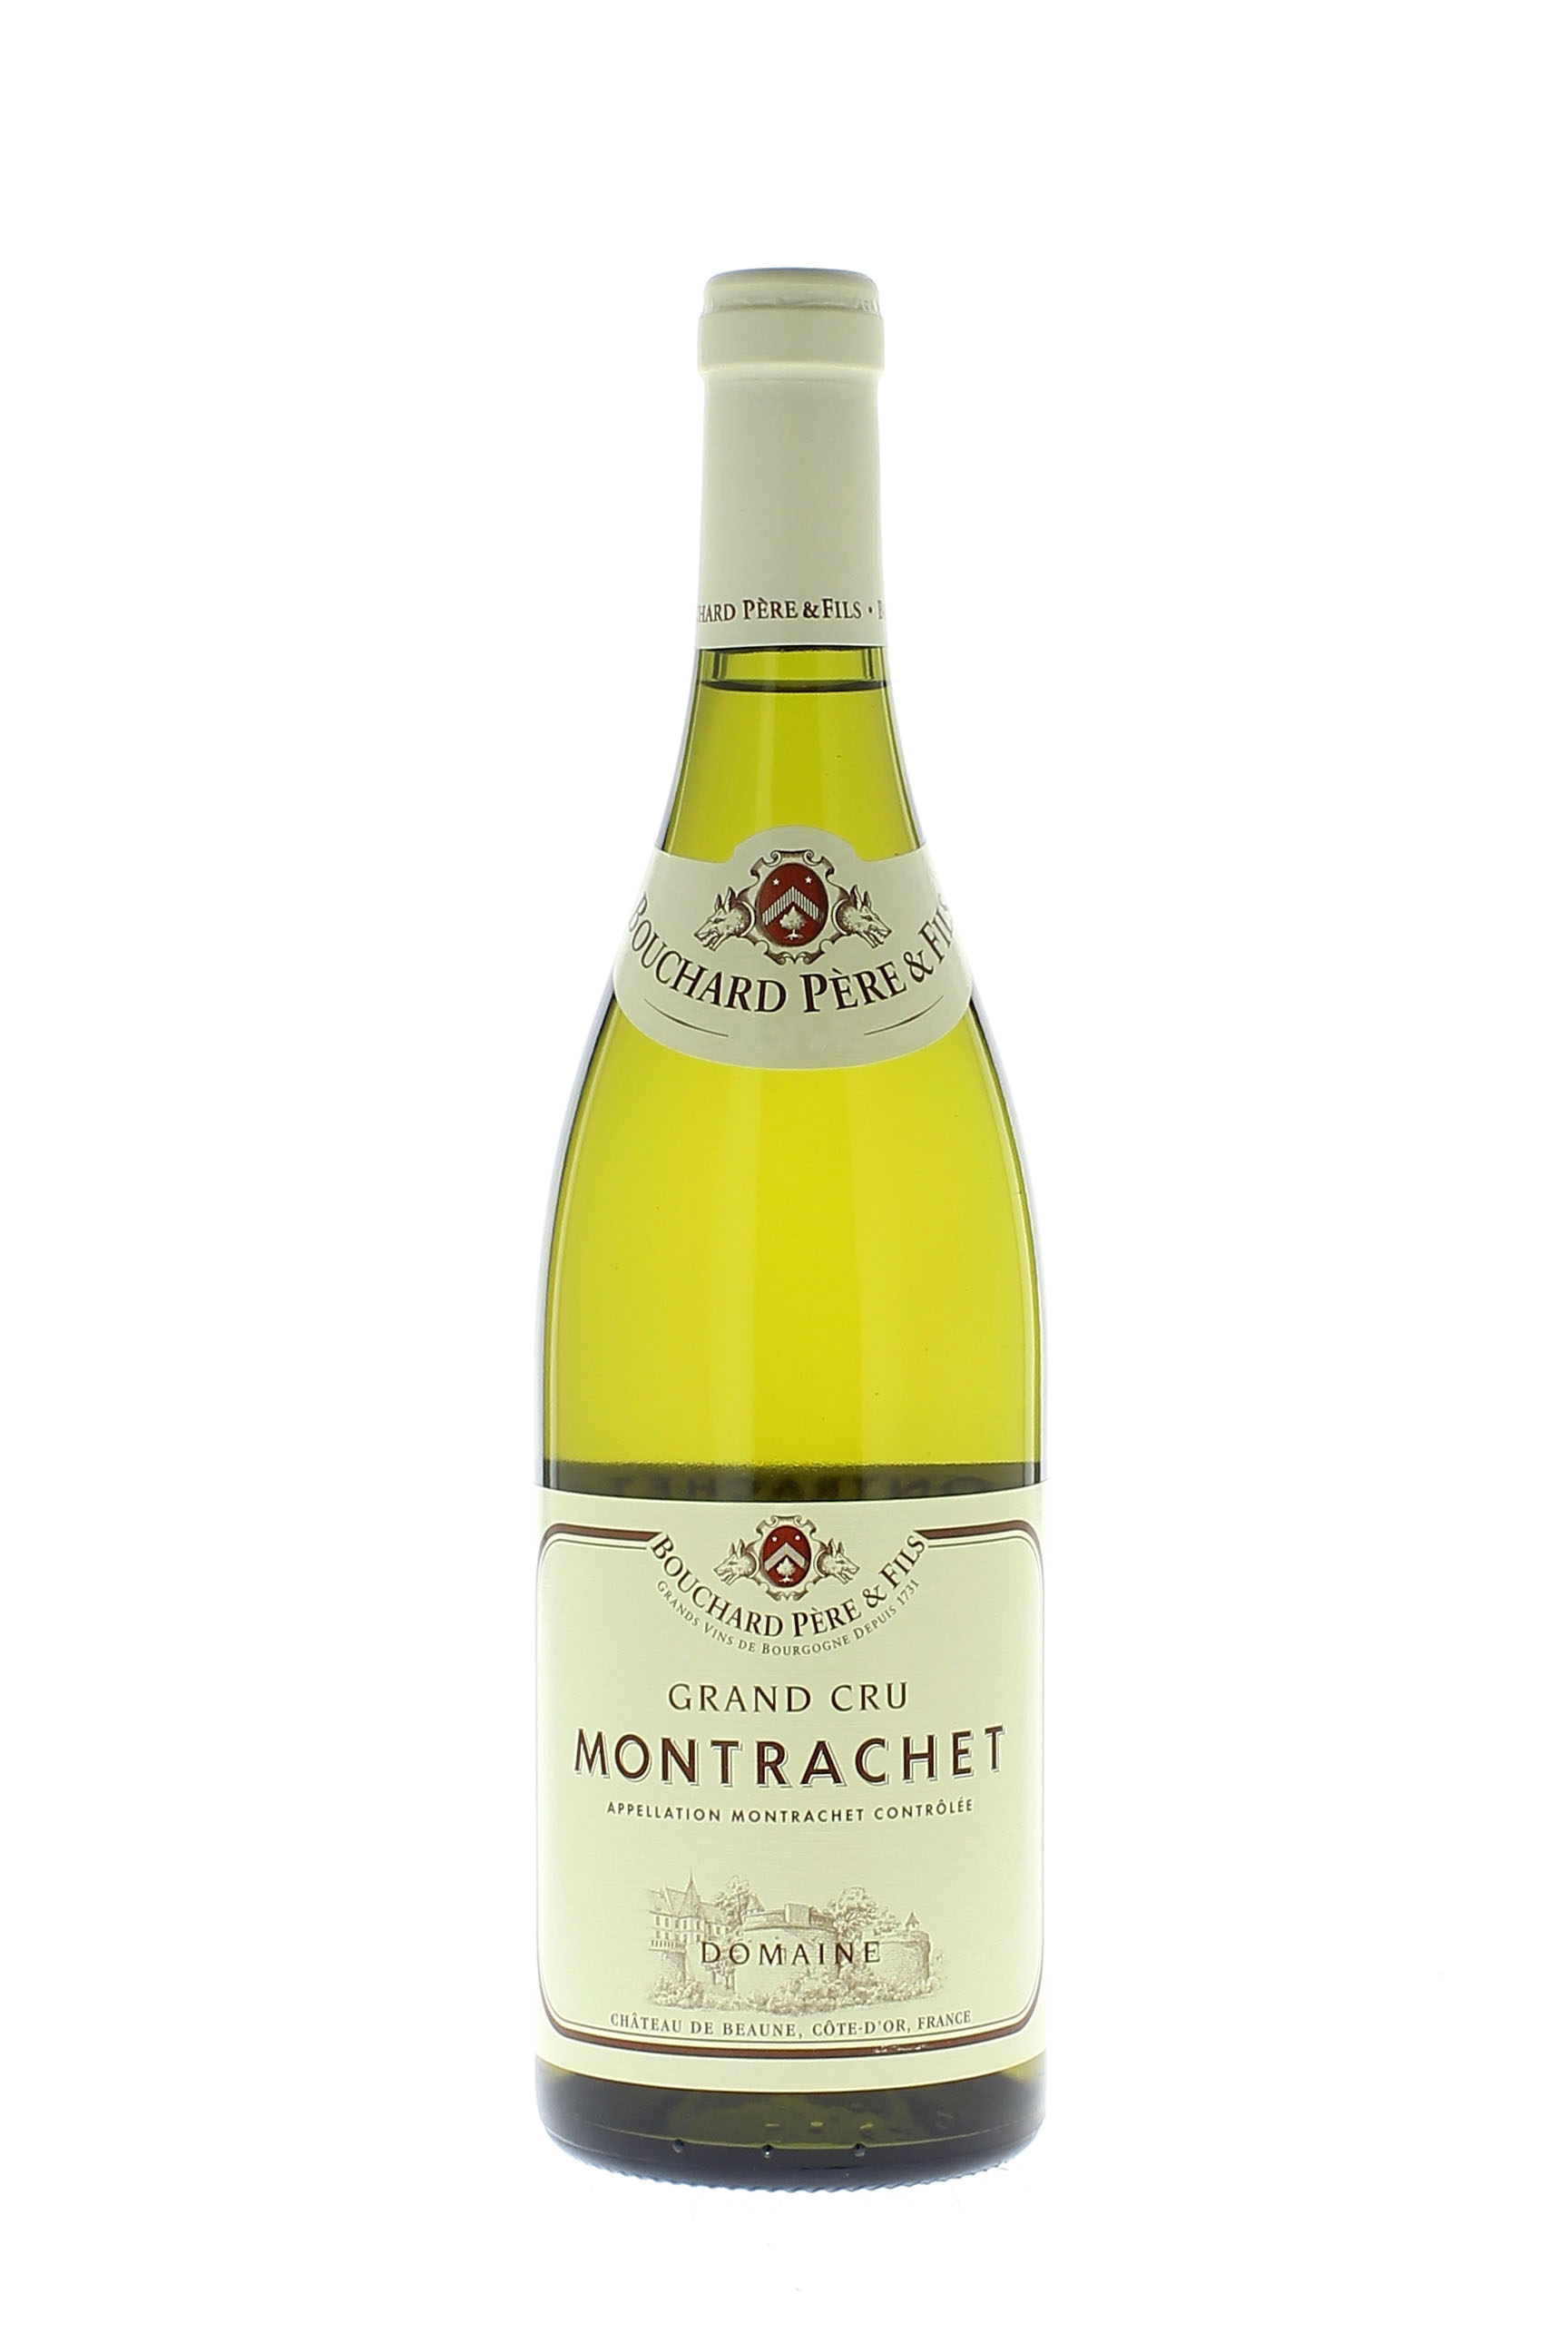 Montrachet grand cru 2011  BOUCHARD Pre et fils, Bourgogne blanc